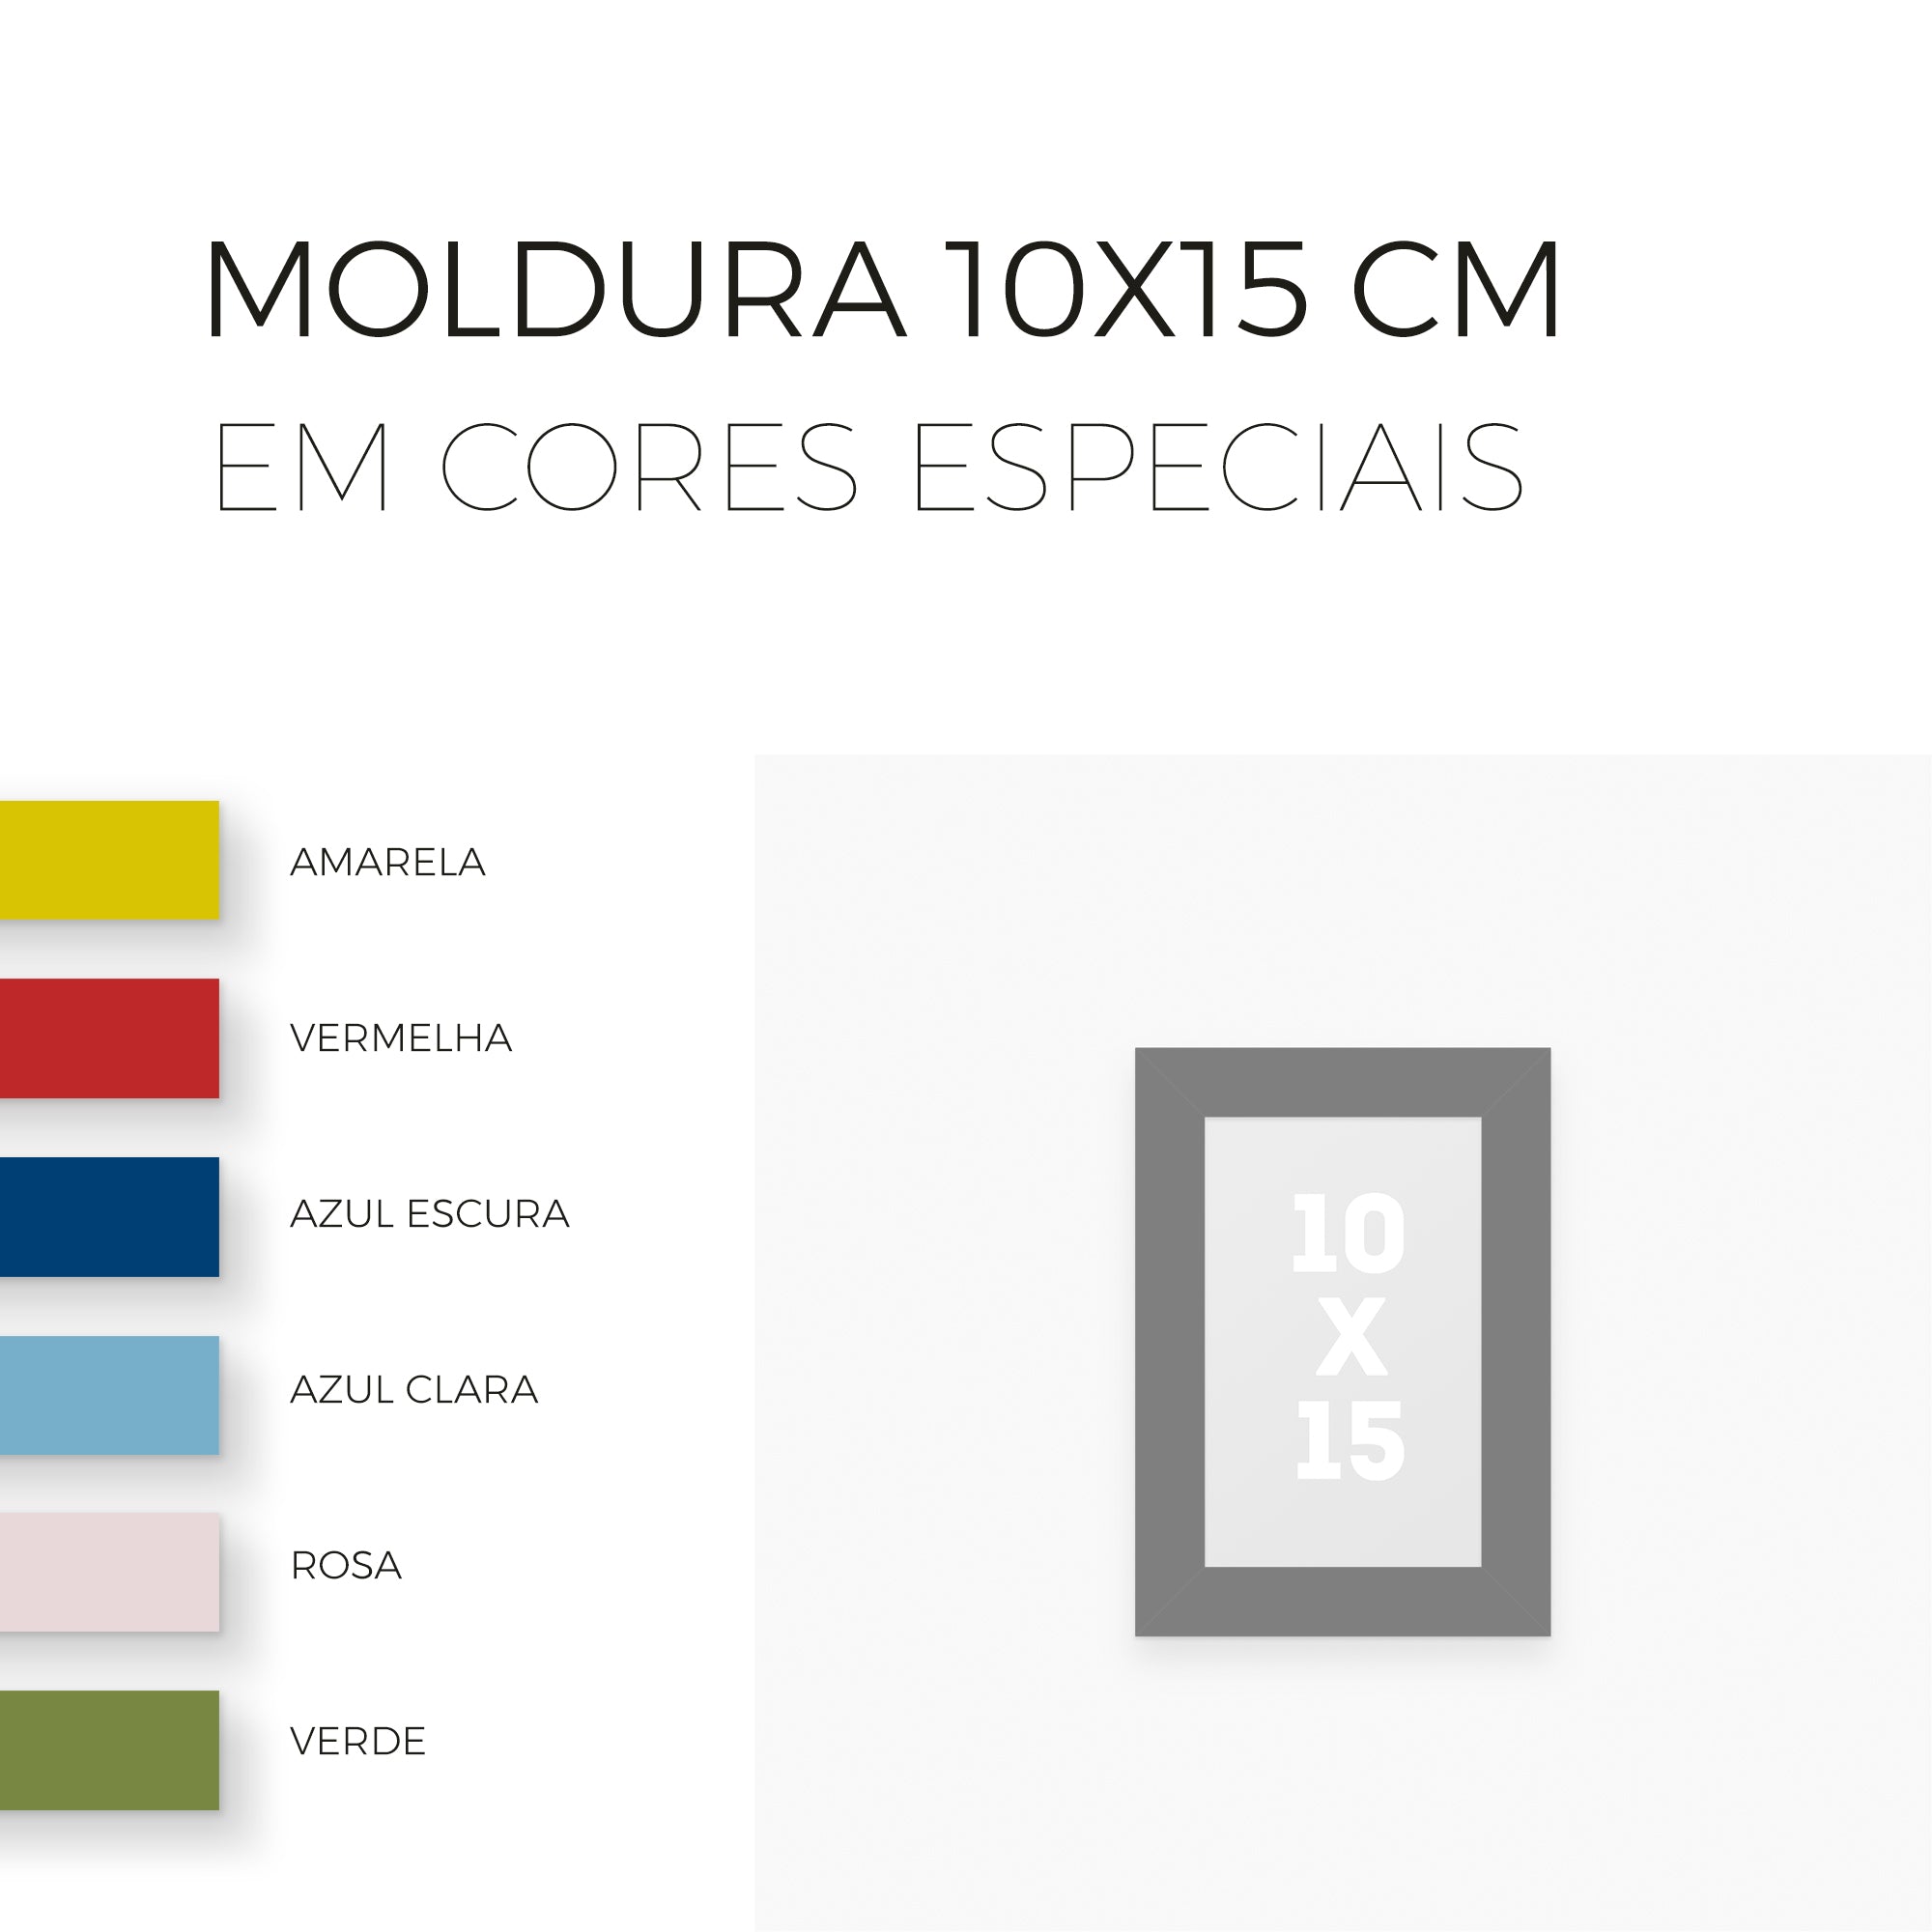 Moldura 10x15